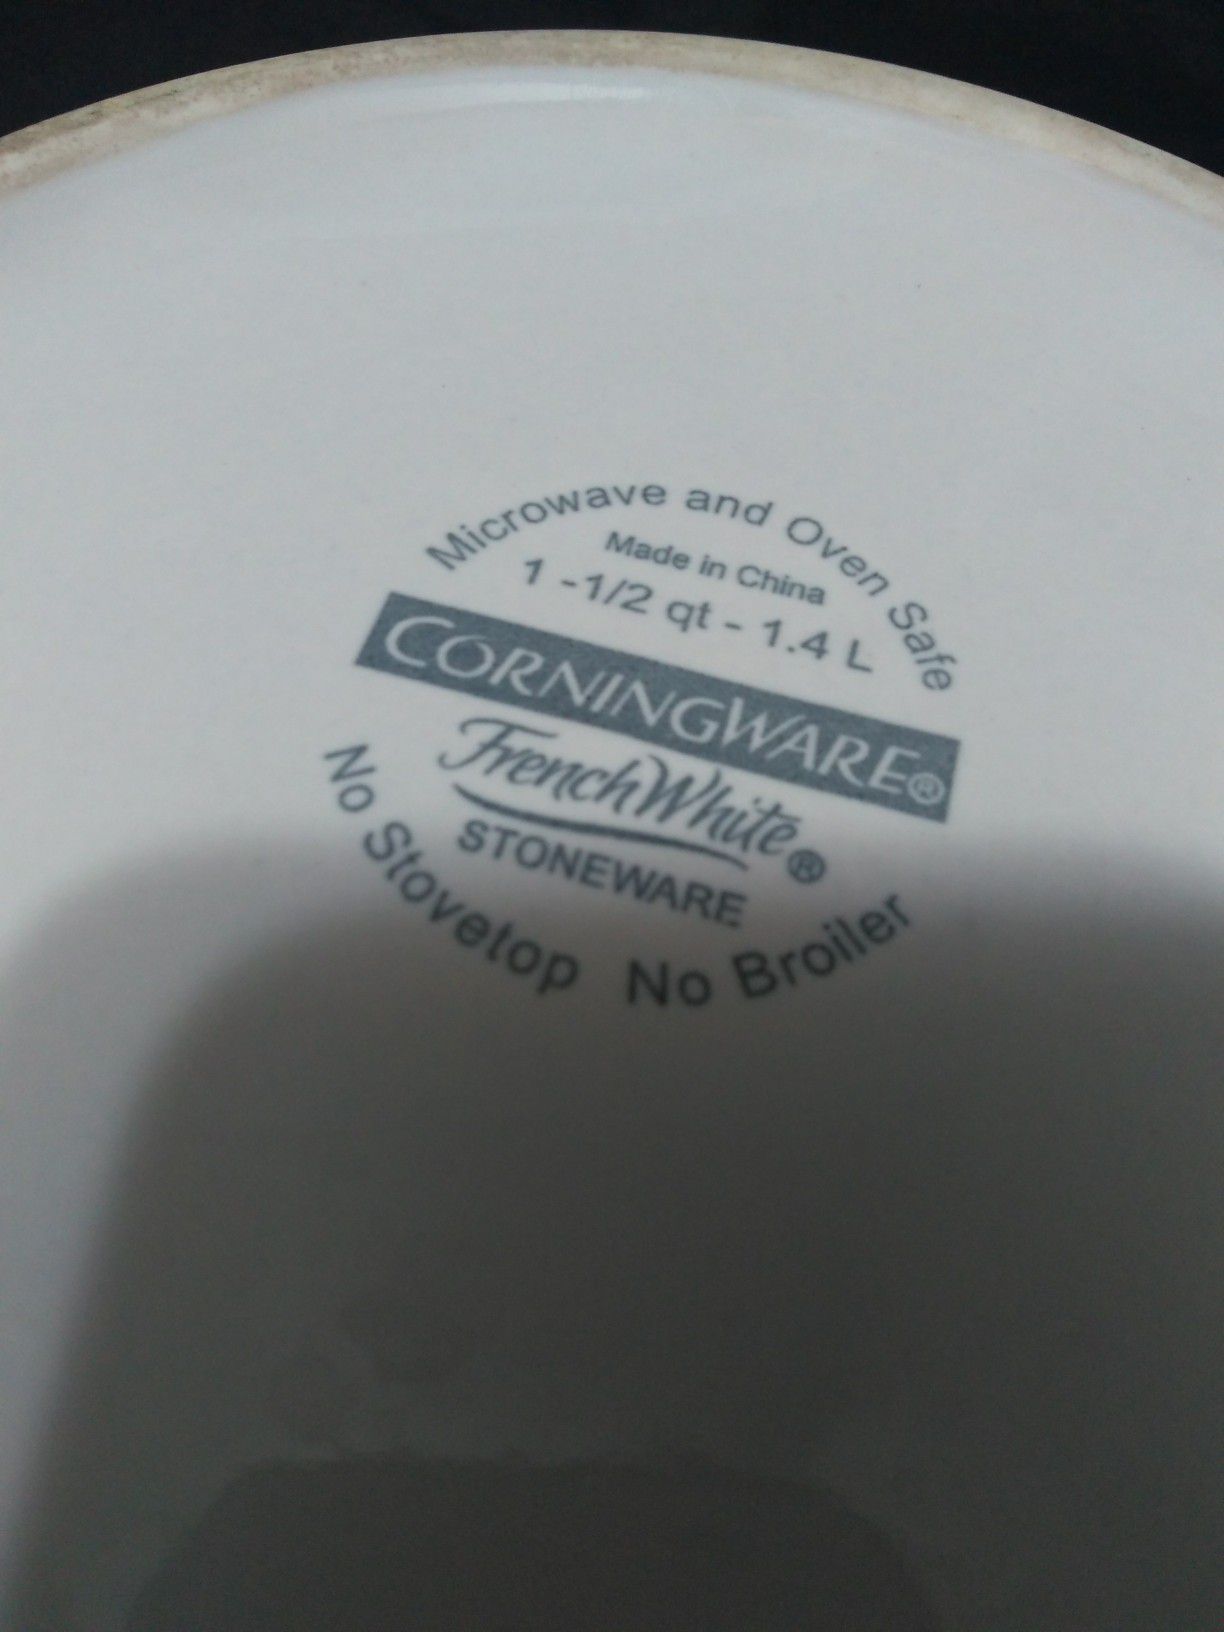 Corningware dish "6